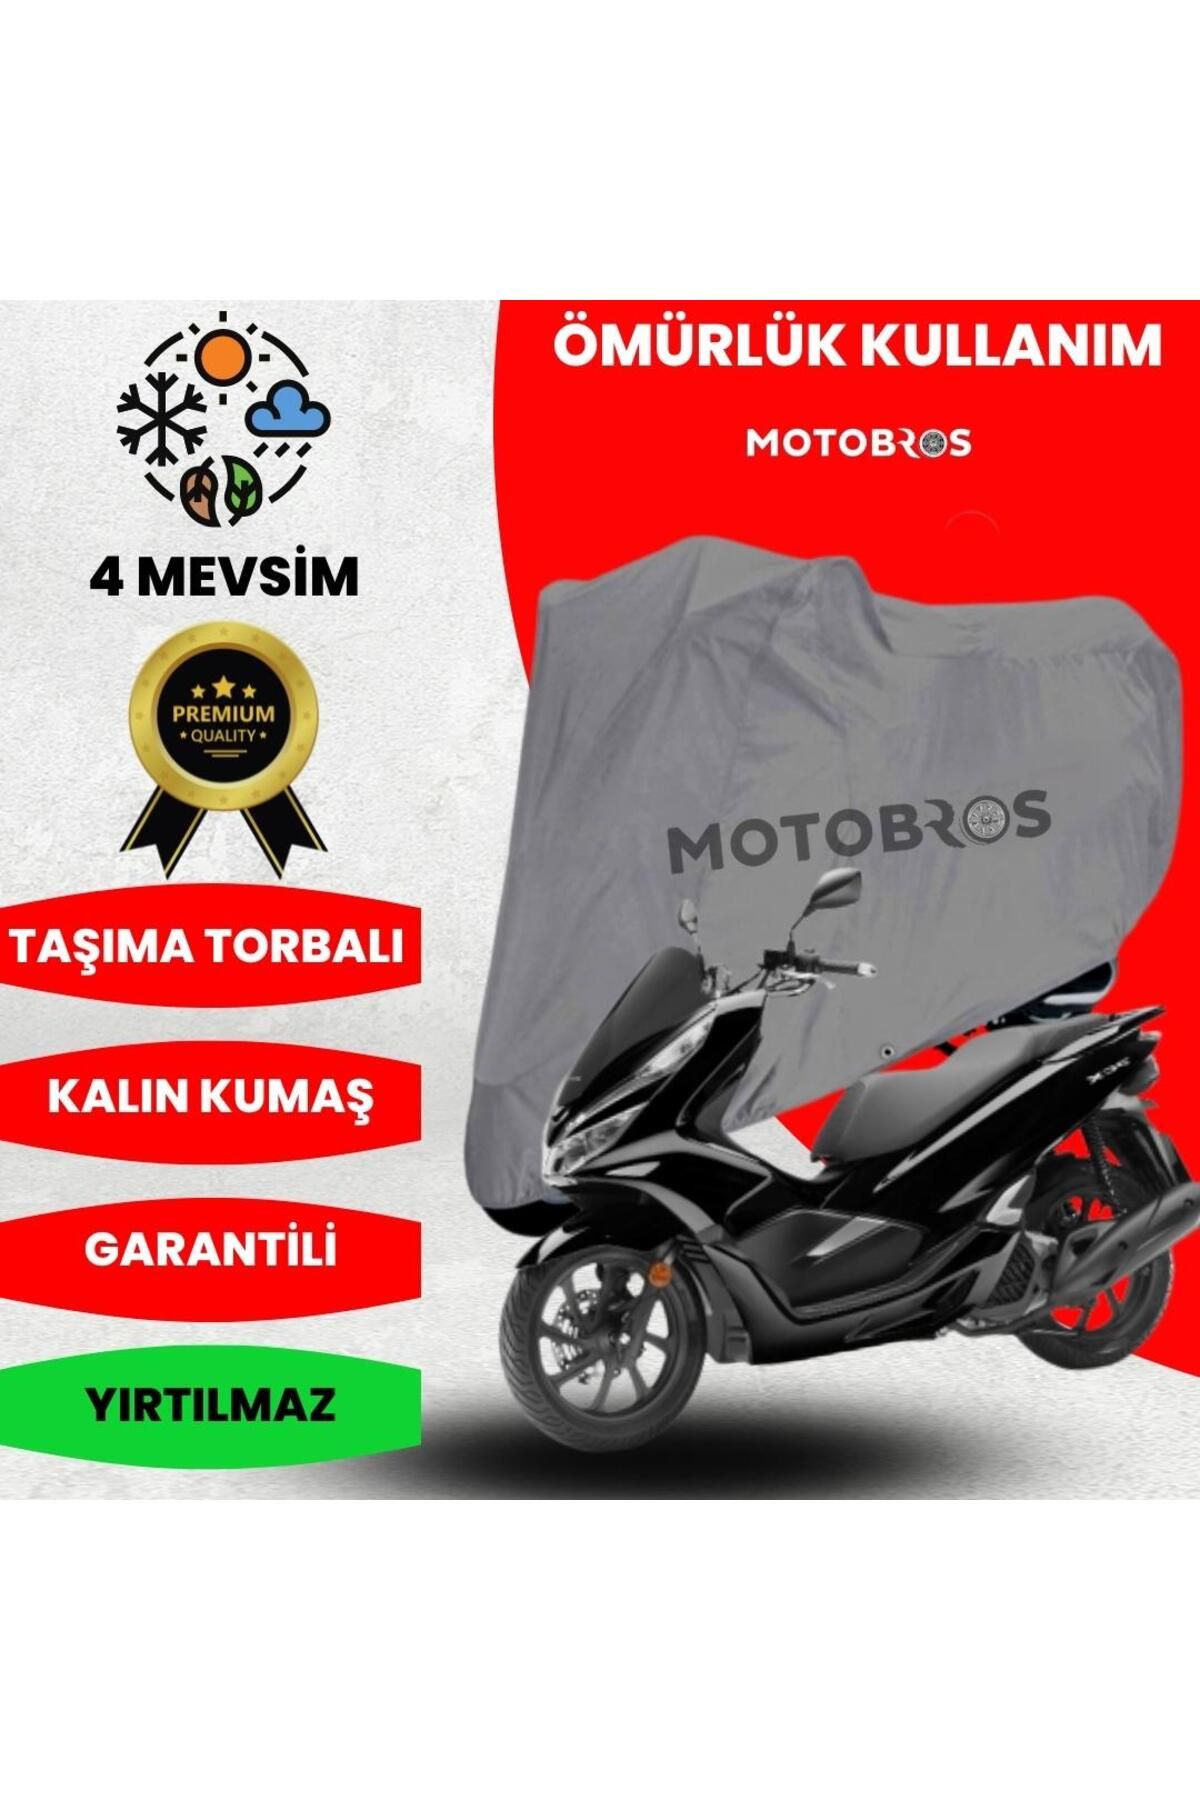 Motobros Pcx 125 Motosiklet Branda (en Kalın) Kumaş Ömürlük Kullanım